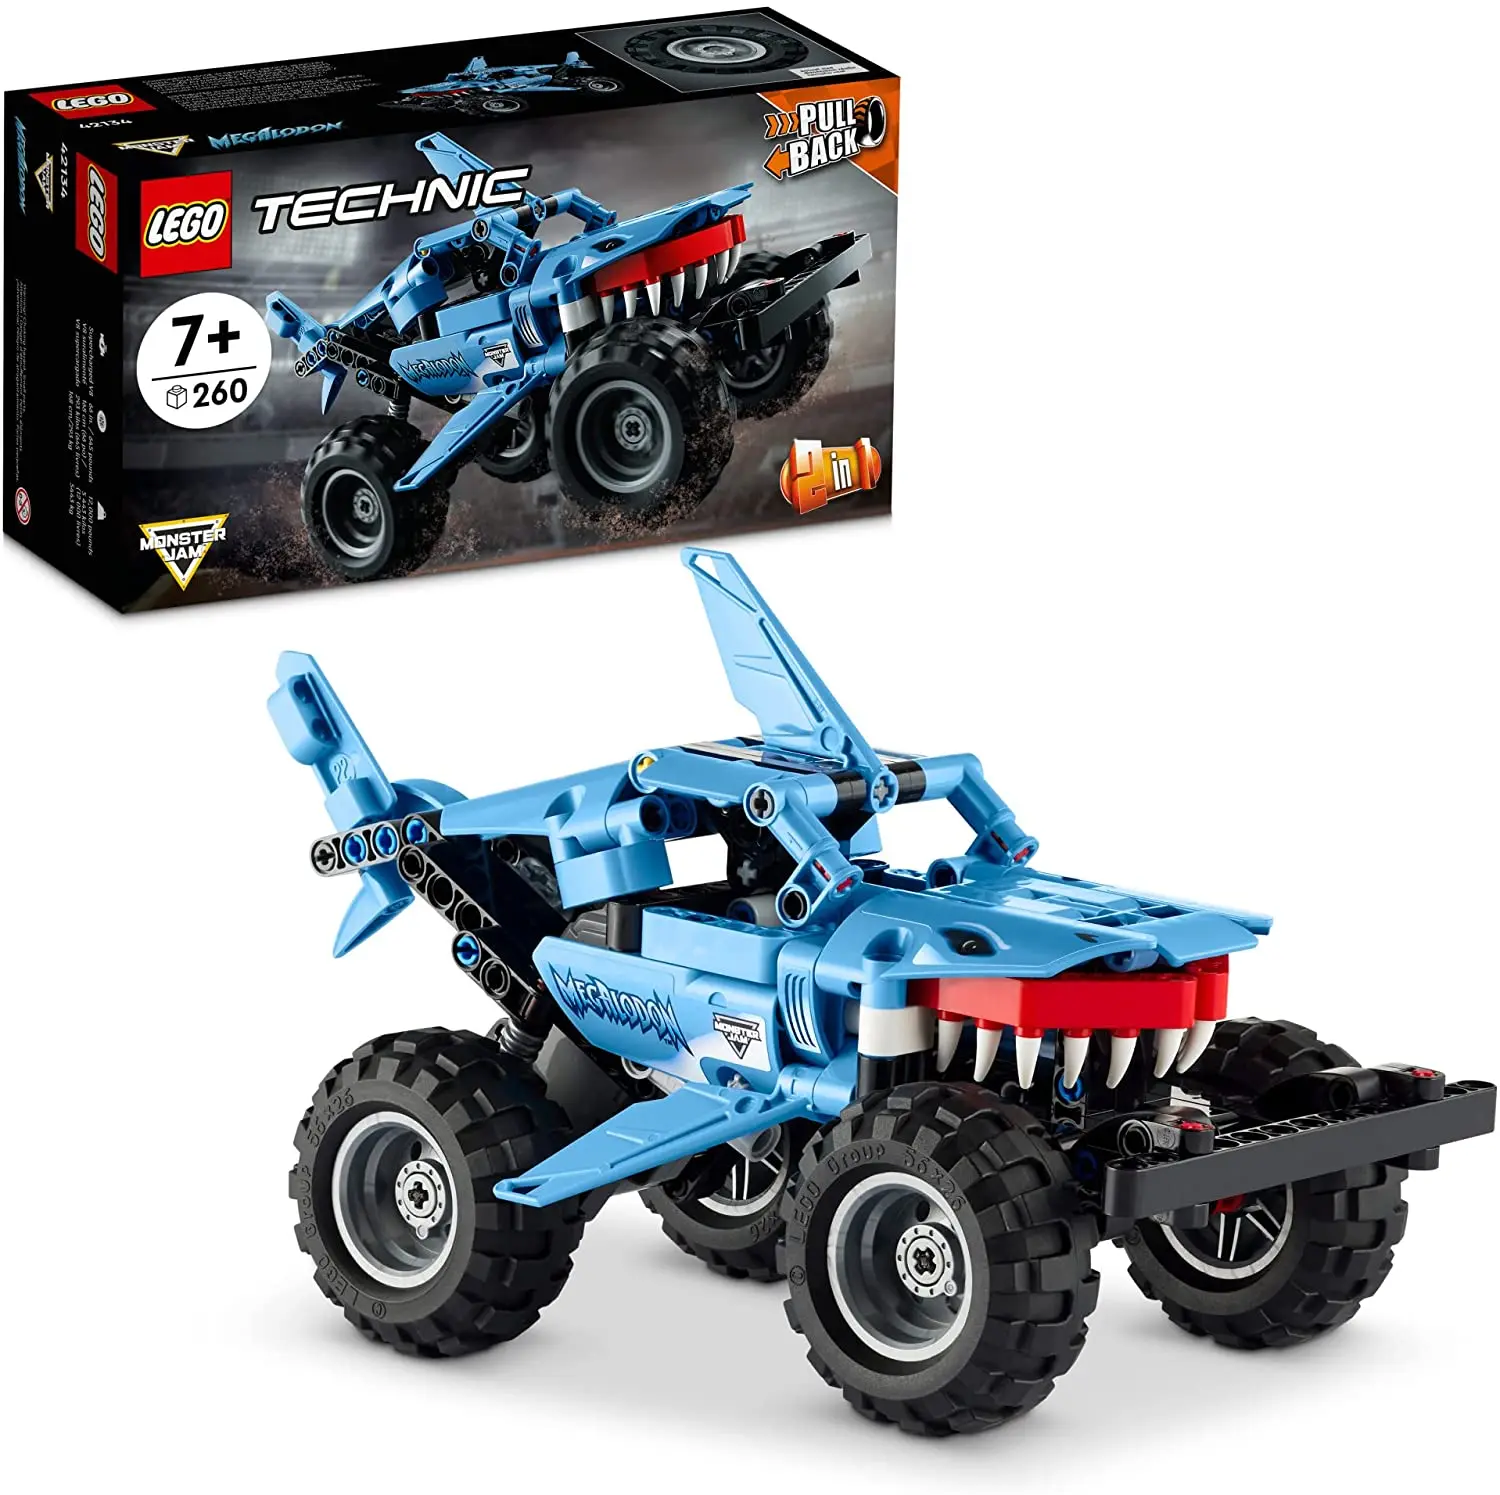 

Lego 42134 Technic Monster Jam Megalodon Model Building Kit; A 2-in-1 Build for Kids Who Love Monster Truck Toys